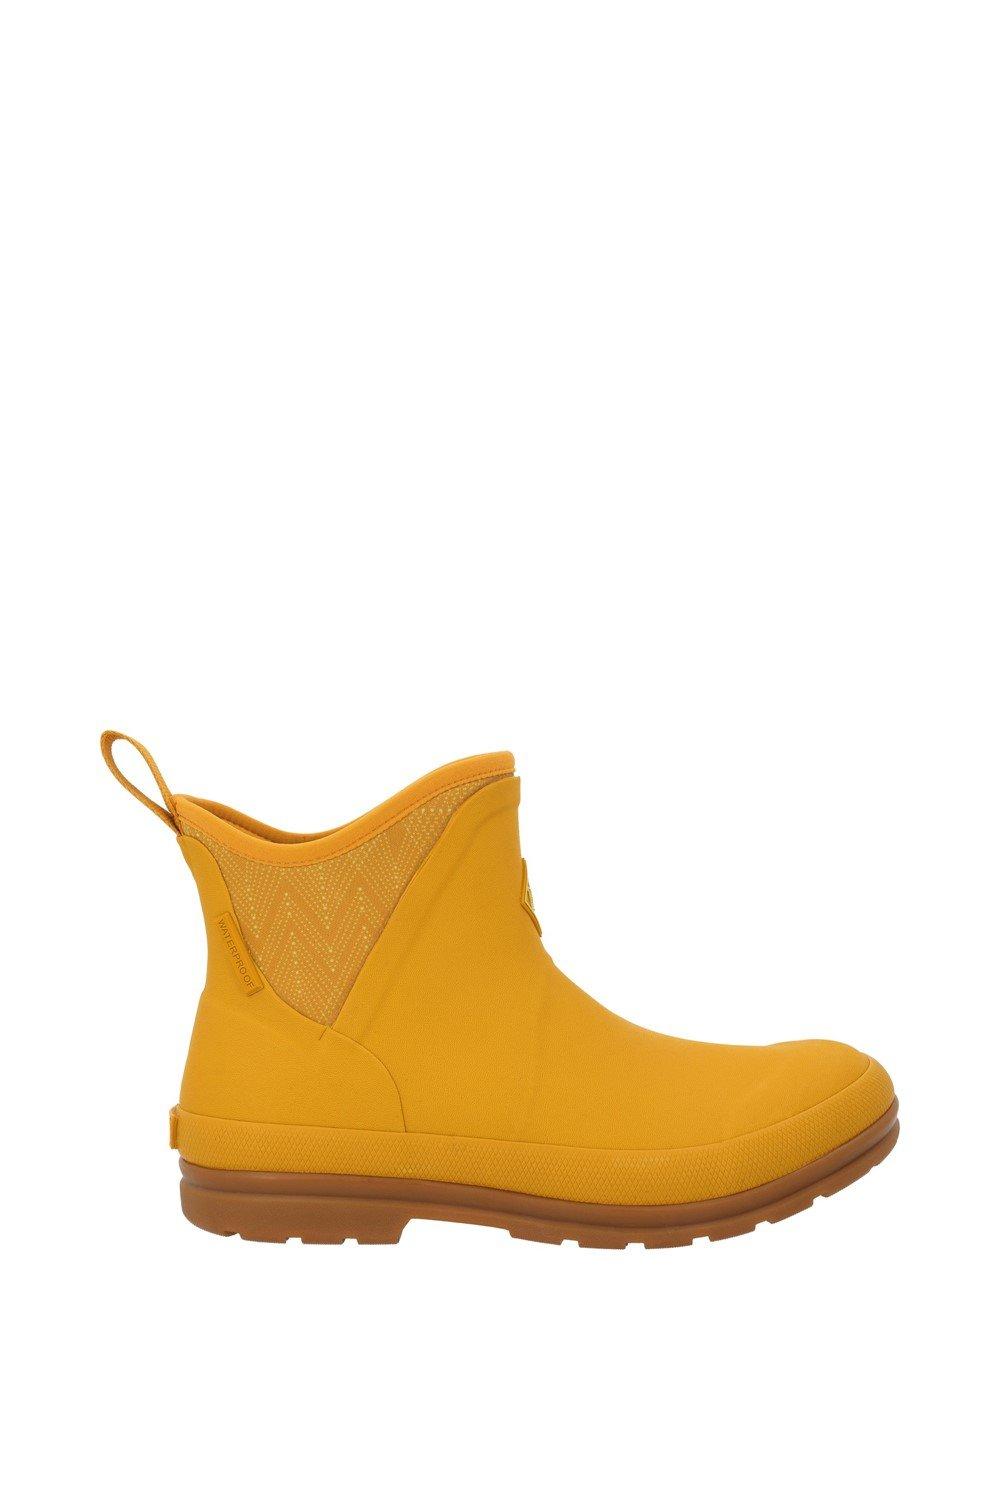 Желтые резиновые сапоги до щиколотки 'Muck Originals' Muck Boots, желтый